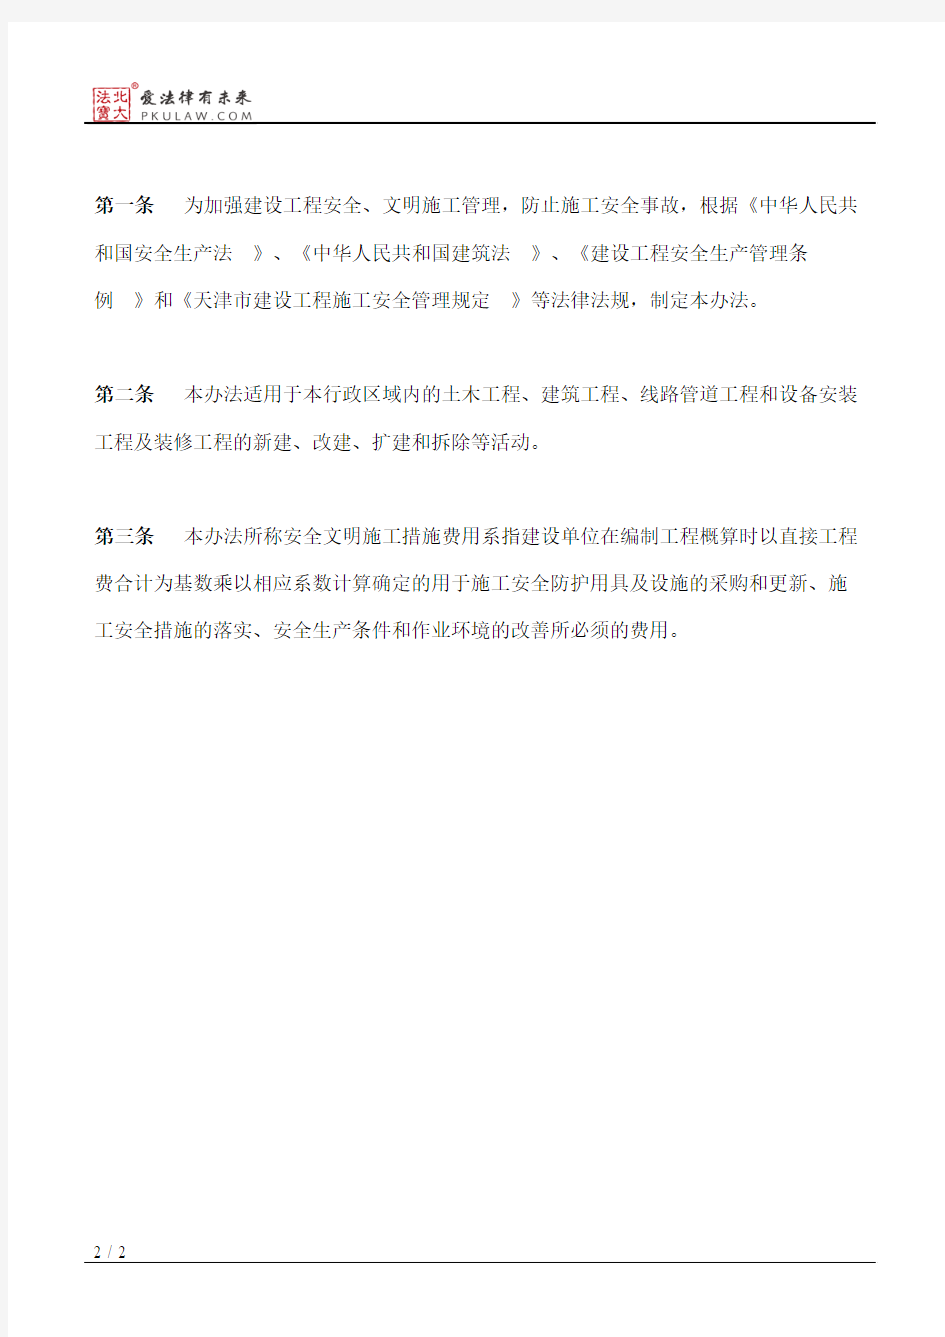 天津市建设管理委员会关于印发《天津市建设工程安全文明施工措施